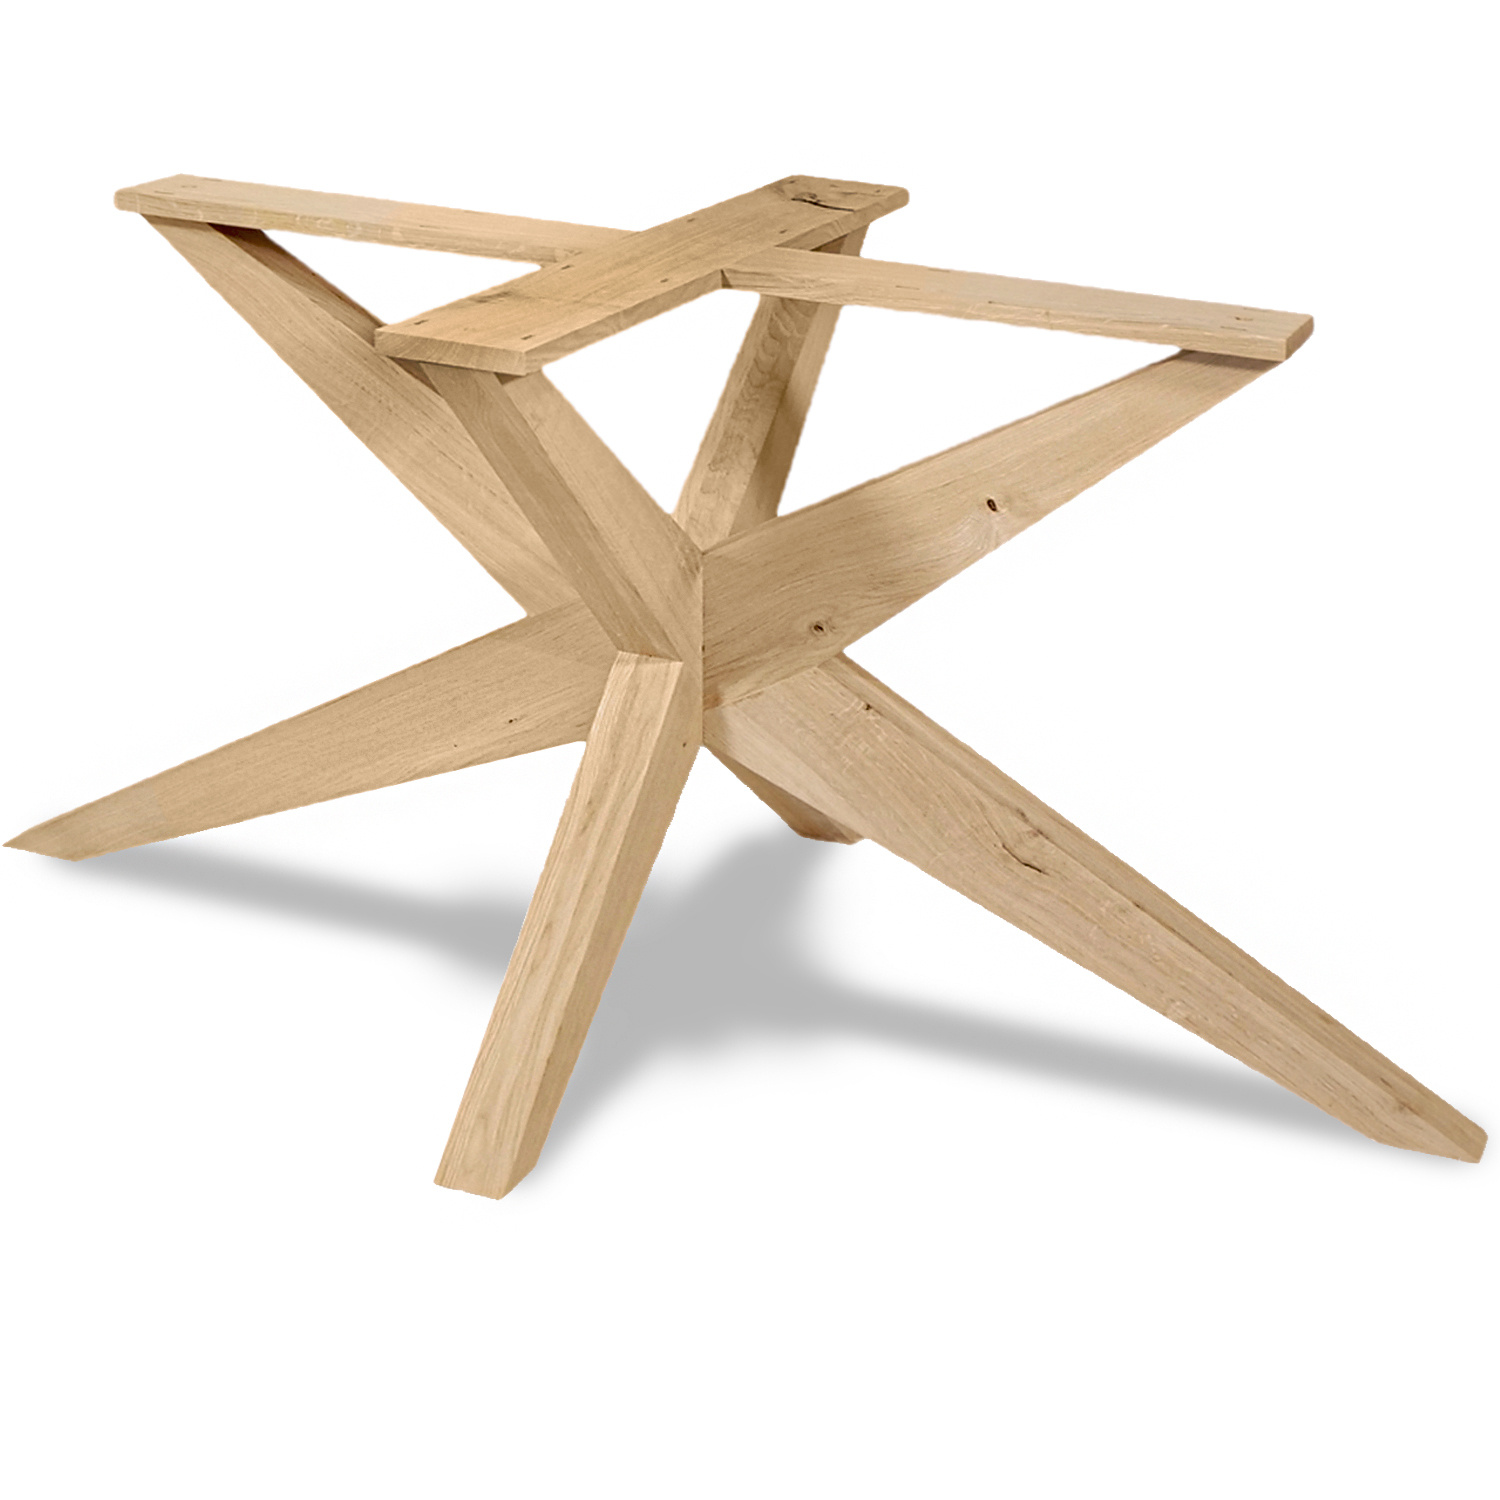  Tischgestell Eiche Spider- schräge Beine - 80x180 cm  - 72 cm hoch - Eichenholz Rustikal - massives Tischunterstell Rechteck, oval & gross rund (Mittelfuß) - Künstlich getrocknet HF 12%